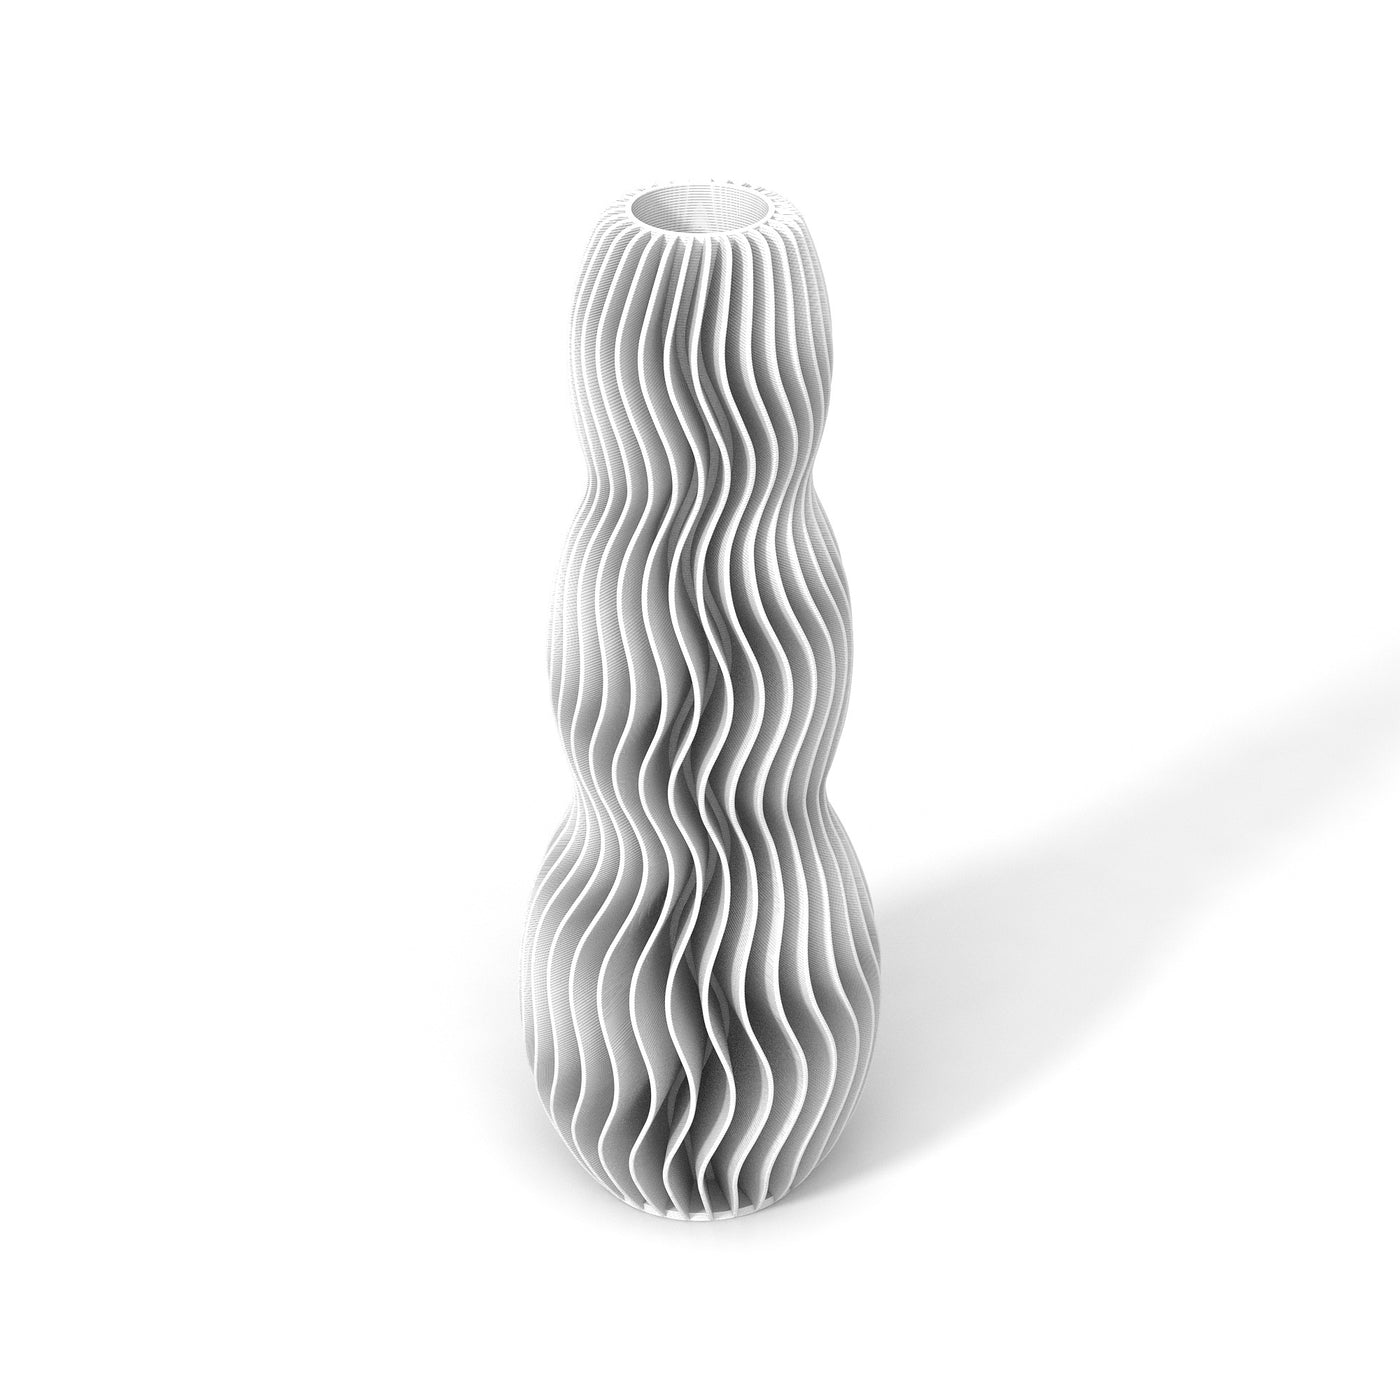 Bílá designová váza 3D print WAVE 3